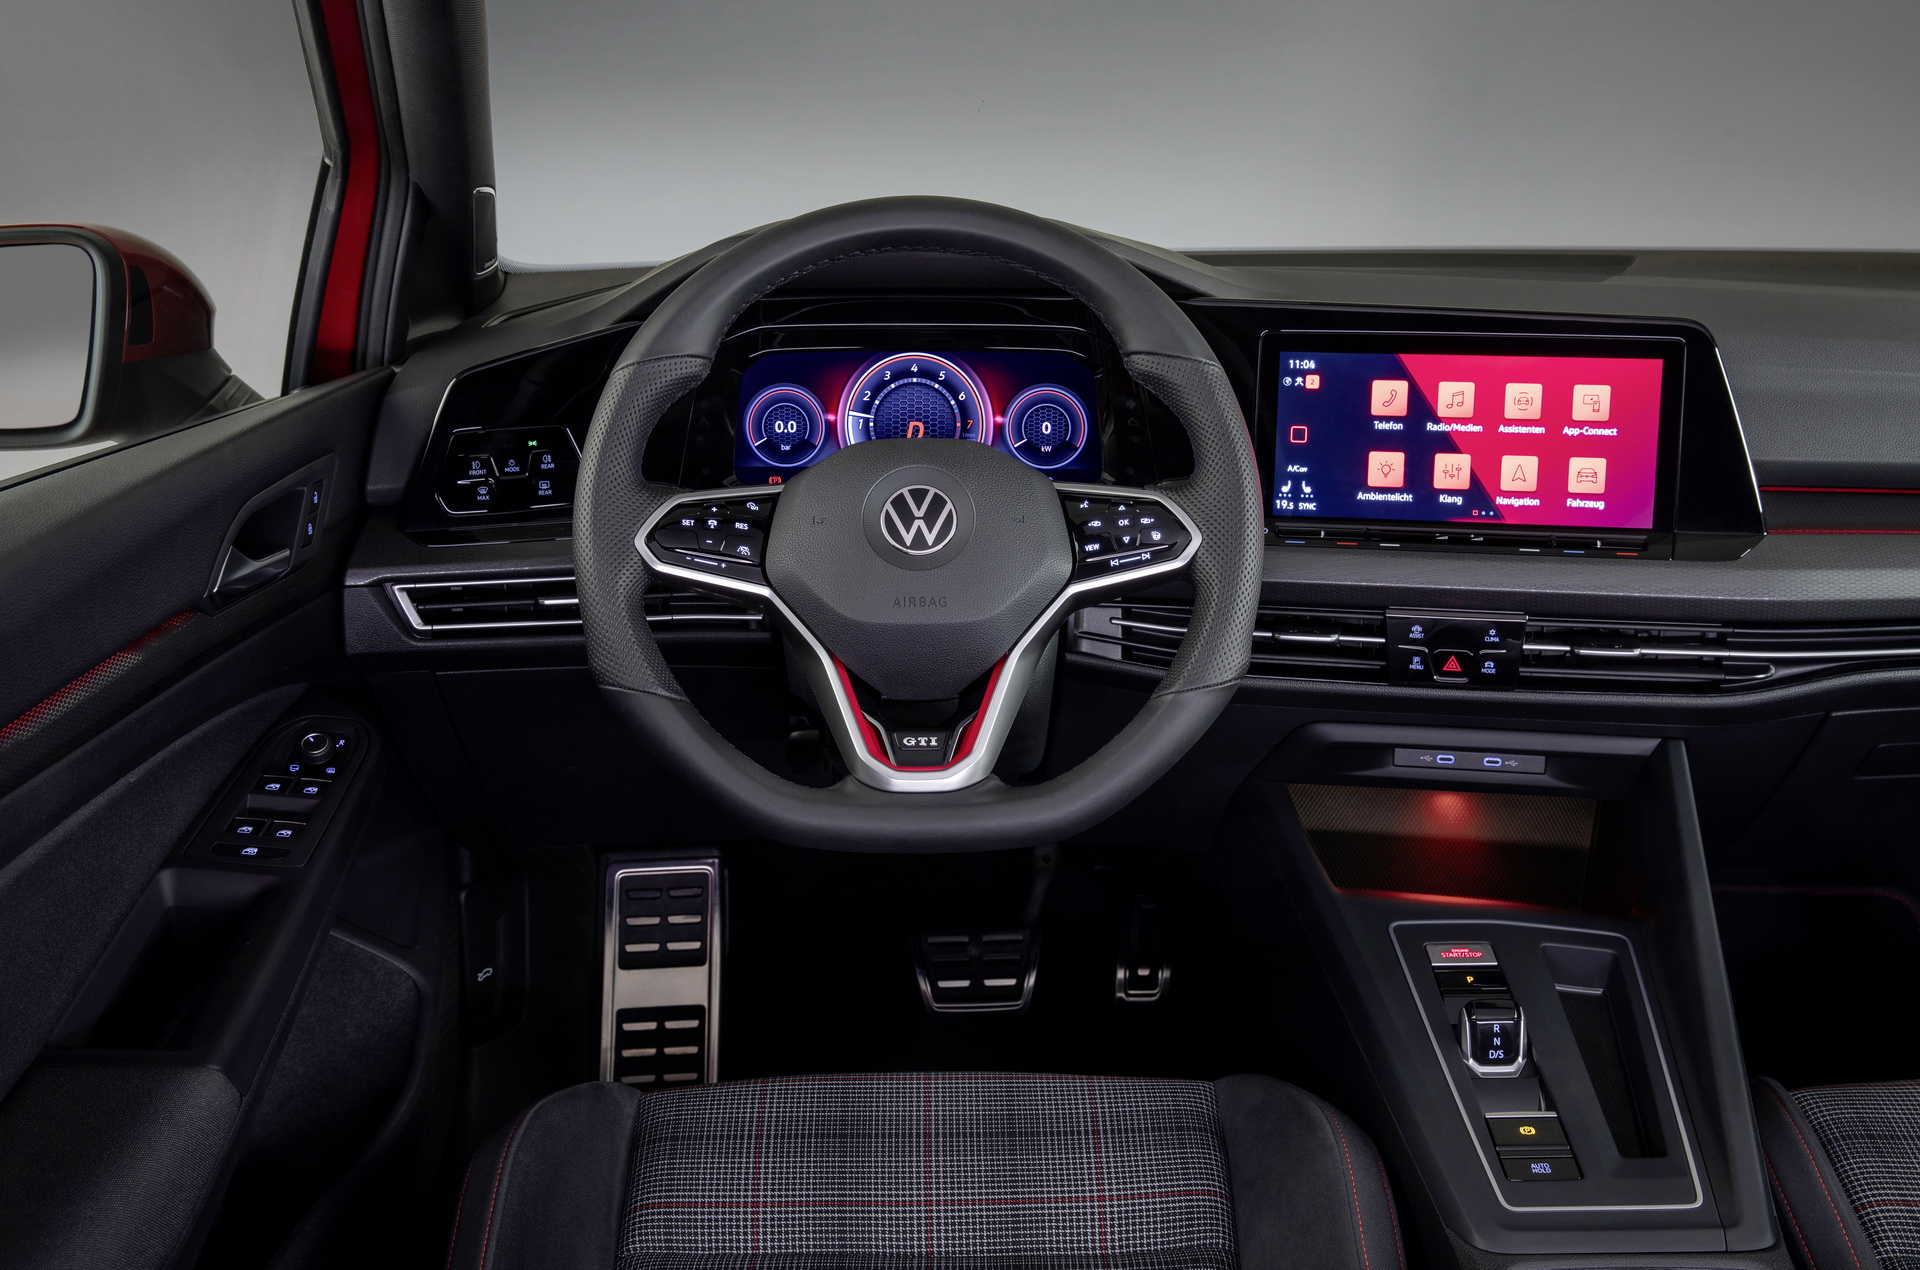 2020 Volkswagen Golf GTI, GTD ve GTE tanıtıldı: İşte tasarımı ve özellikleri